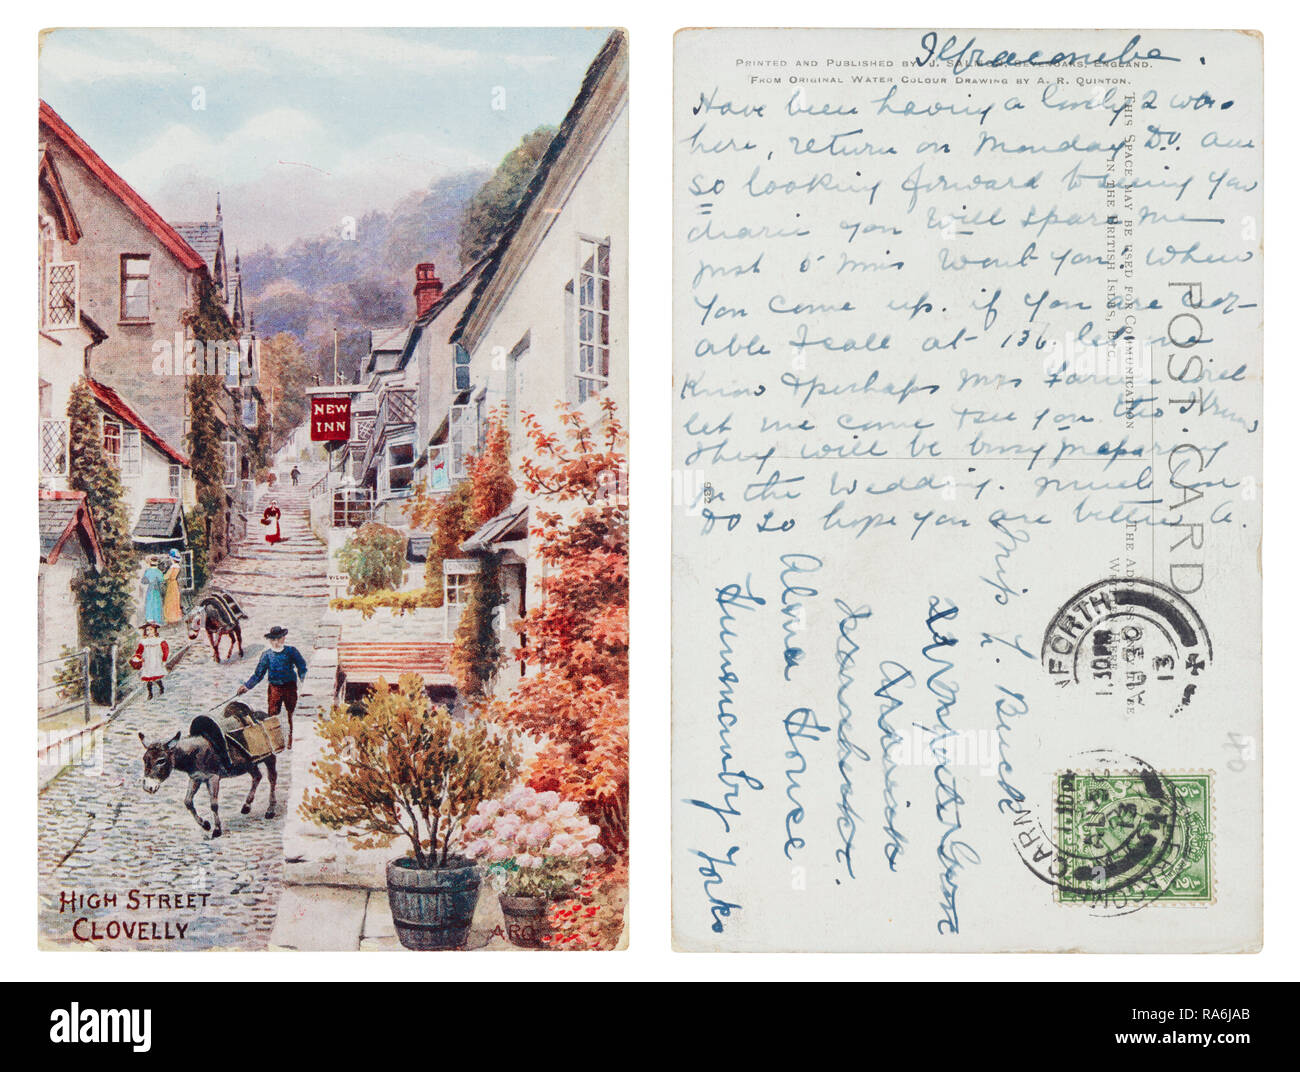 Postal de High Street, Carnforth Clovelly con matasellos de fecha 1913 Foto de stock